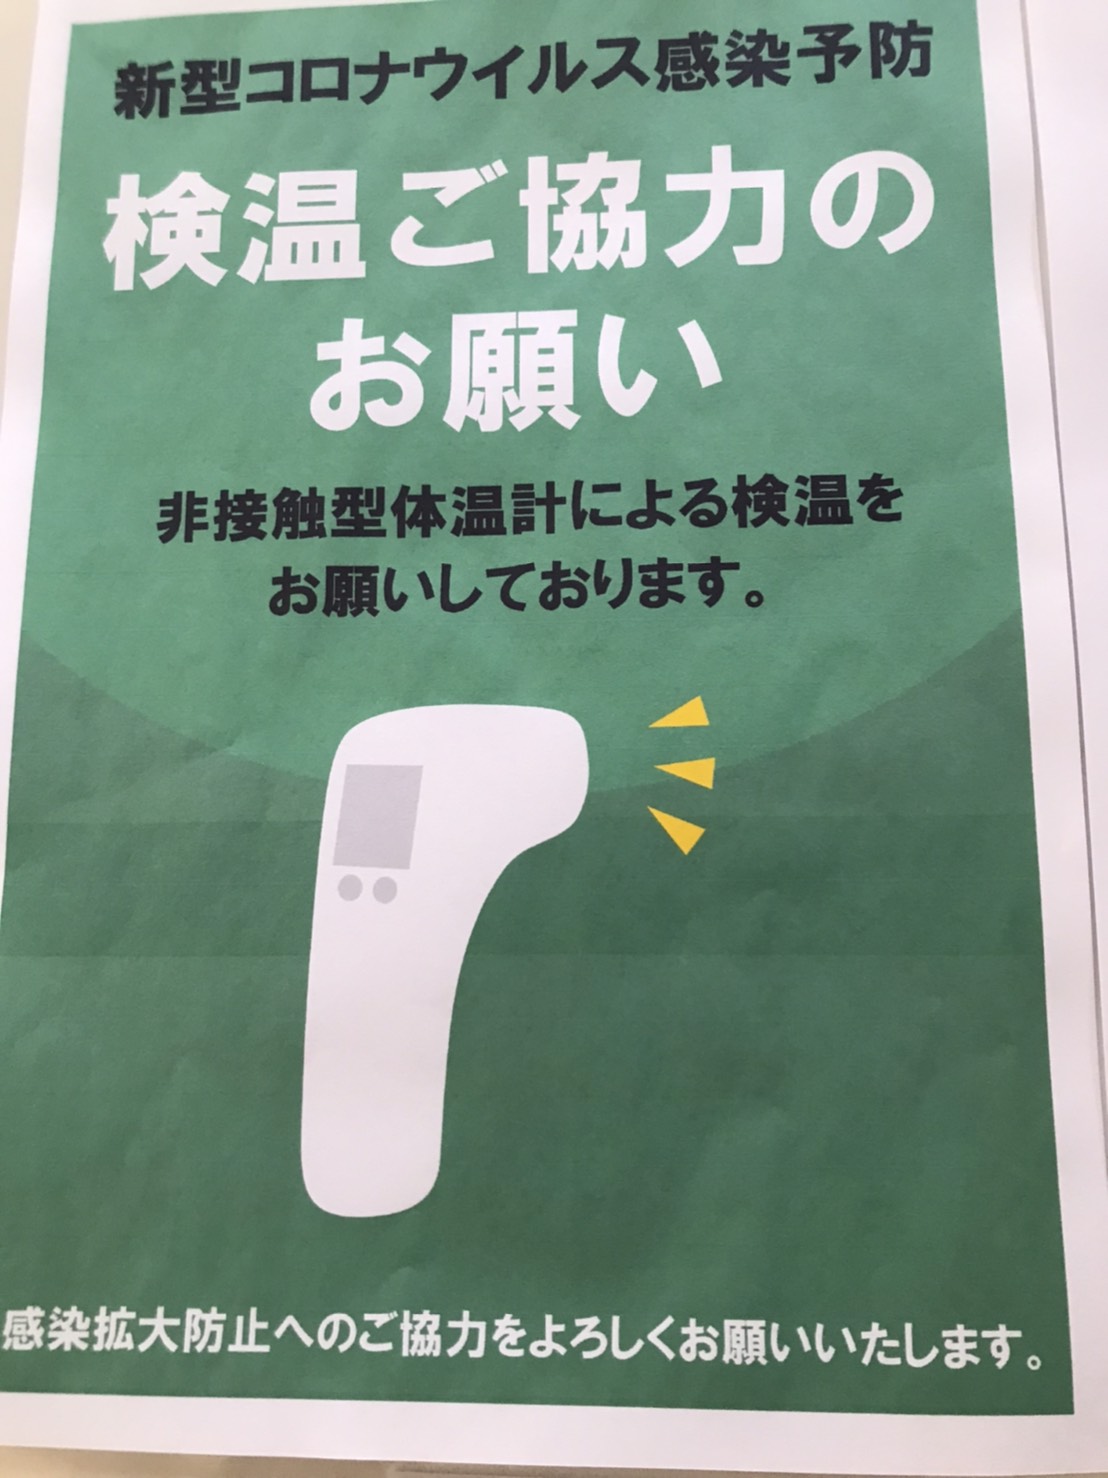 濱倶楽部のコロナウイルス対策の一つである検温ご協力お願いのポスター